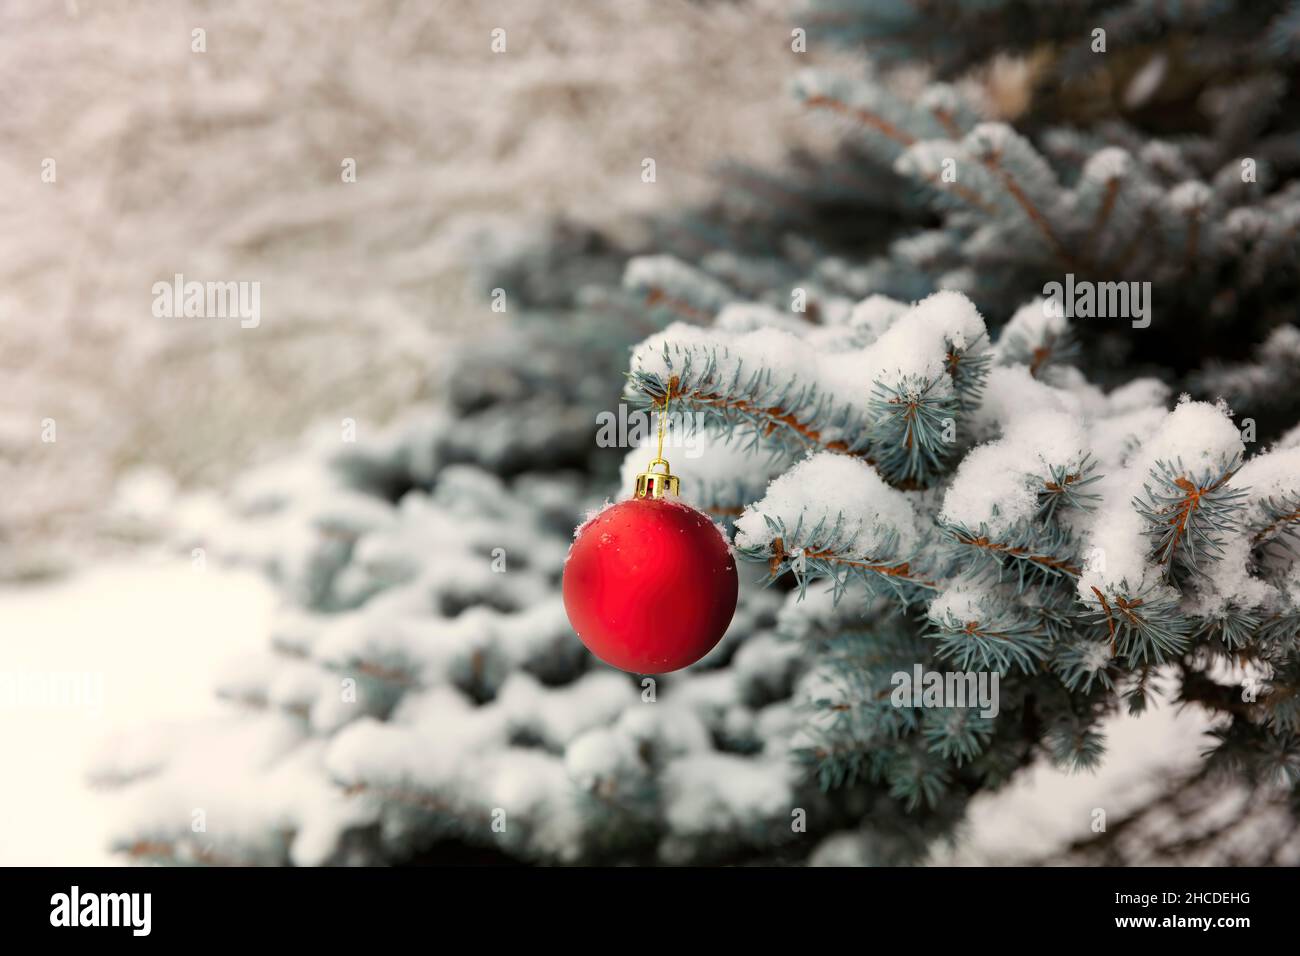 Arbre de Noël extérieur recouvert de neige avec gros plan d'un ornement rouge et or pour le concept de Noël ou du nouvel an Banque D'Images